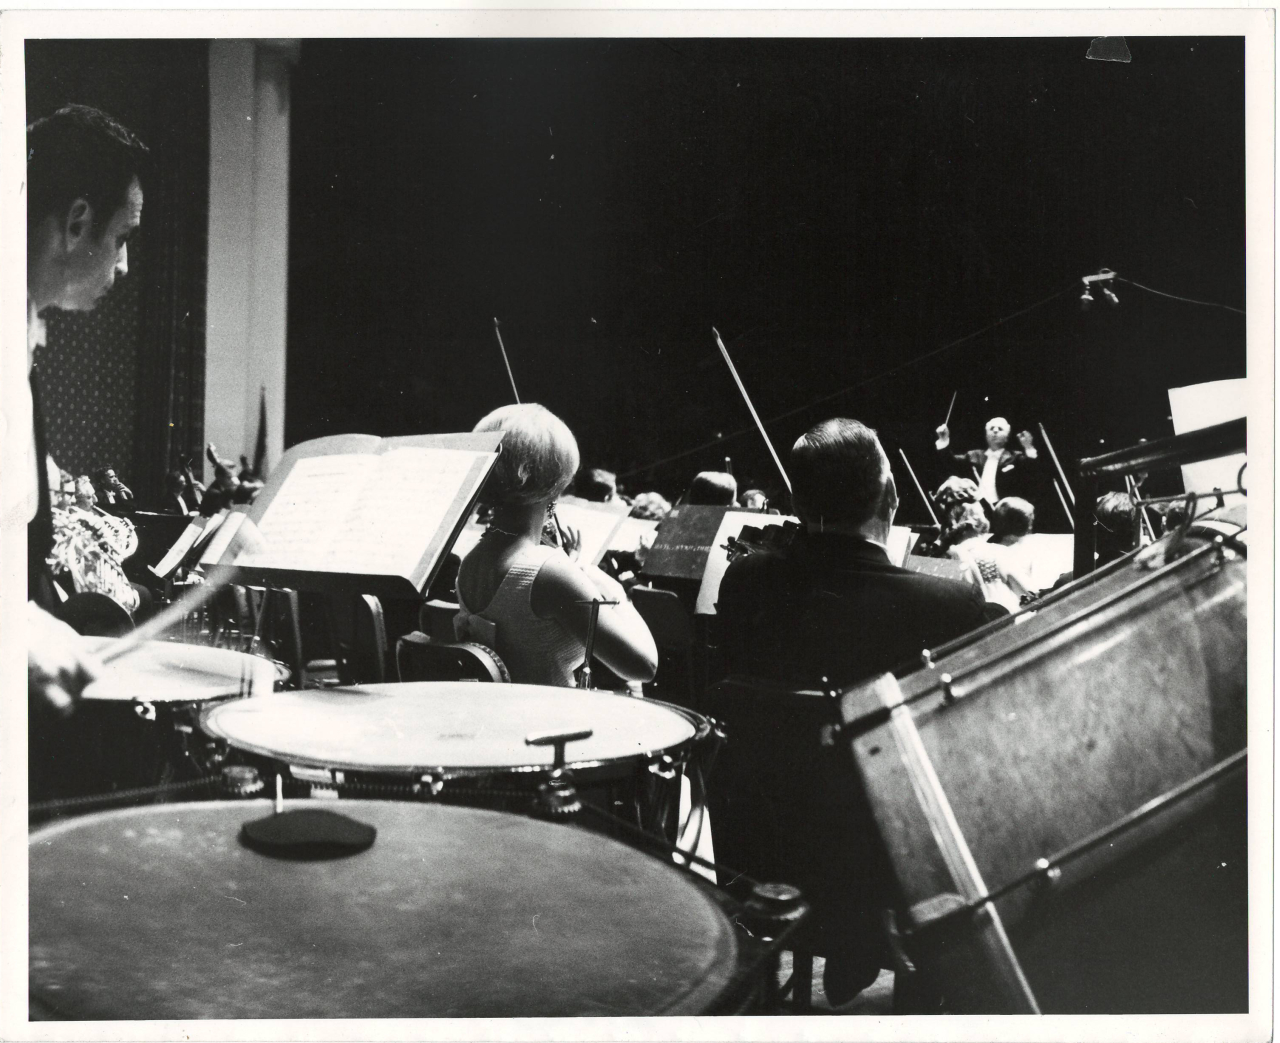 Լուսանկար. Ա. Խաչատրյանը Ամերիկայի ազգային  սիմֆոնիկ նվագախումբը ղեկավարելիս՝ Նյու Յորքի Քարնեգի Հոլ համերգասրահում